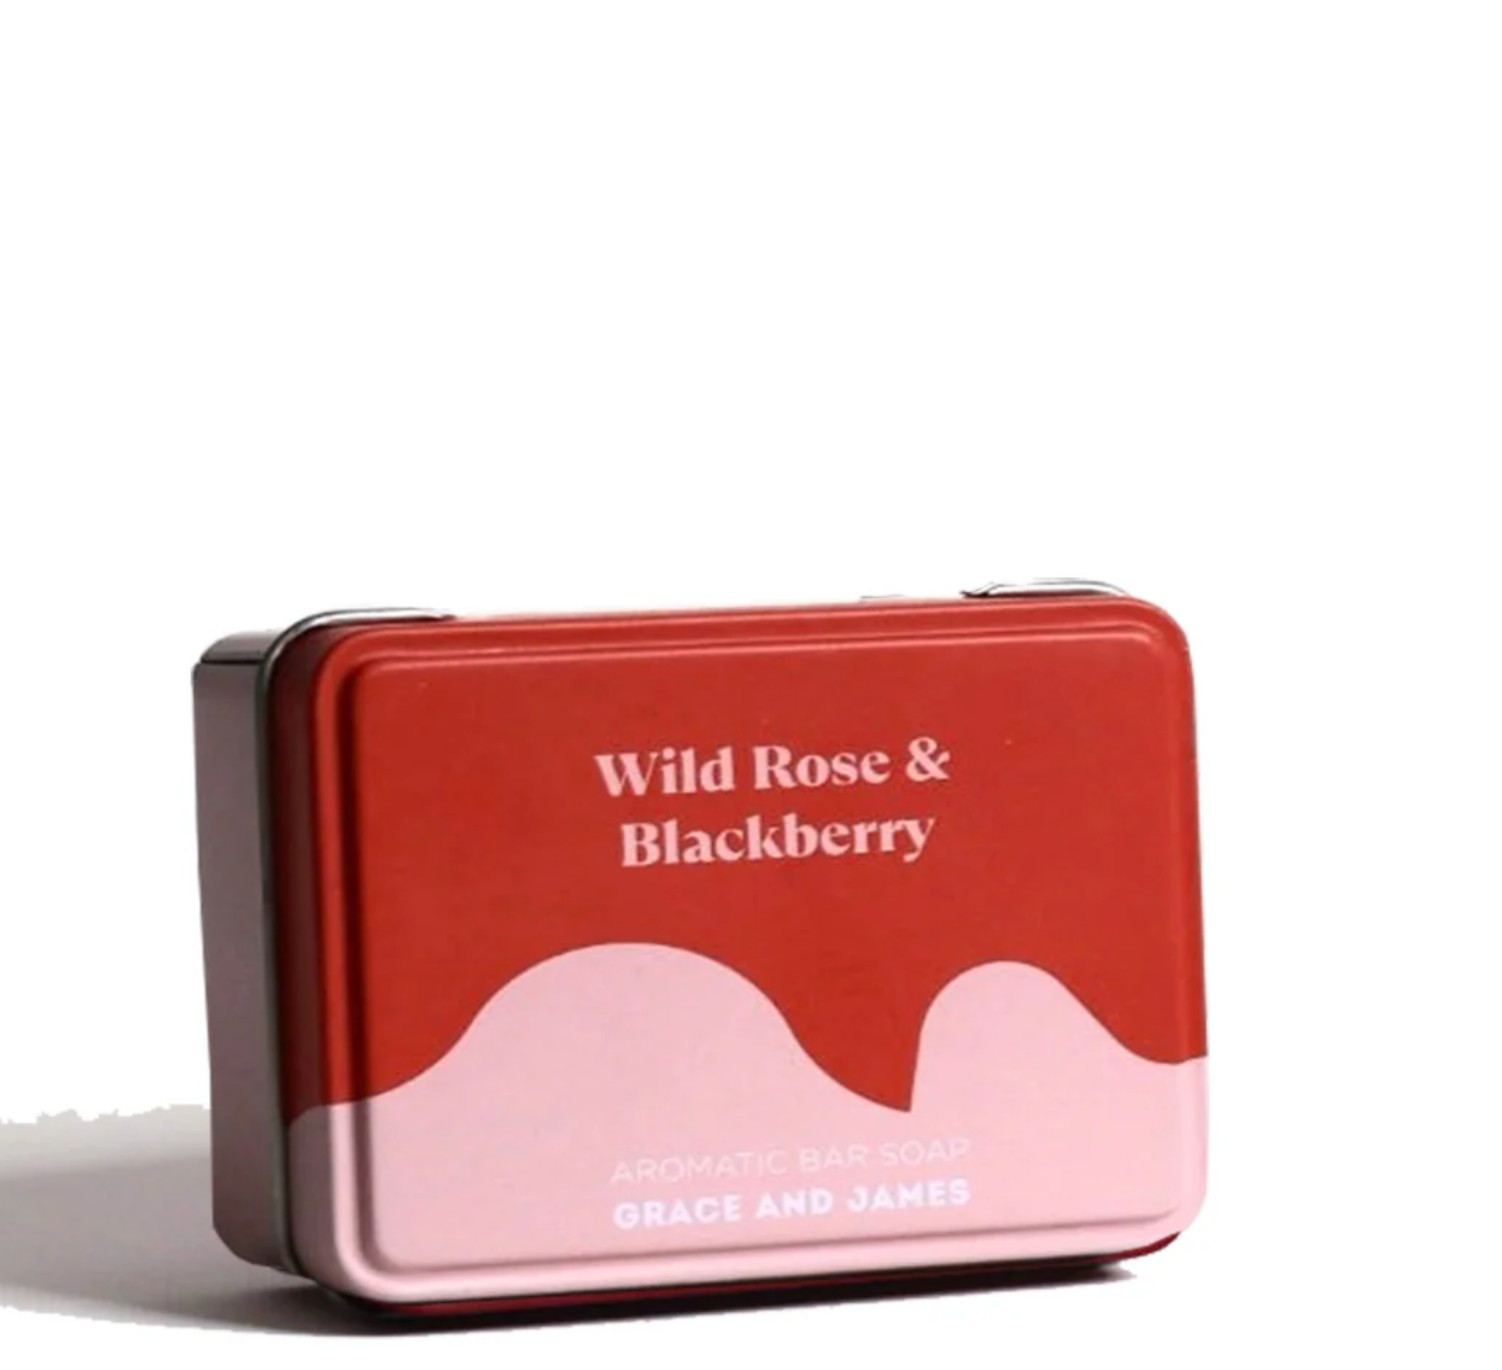 Aromatic Bar Soap / Wild Rose & Blackberry (80g)